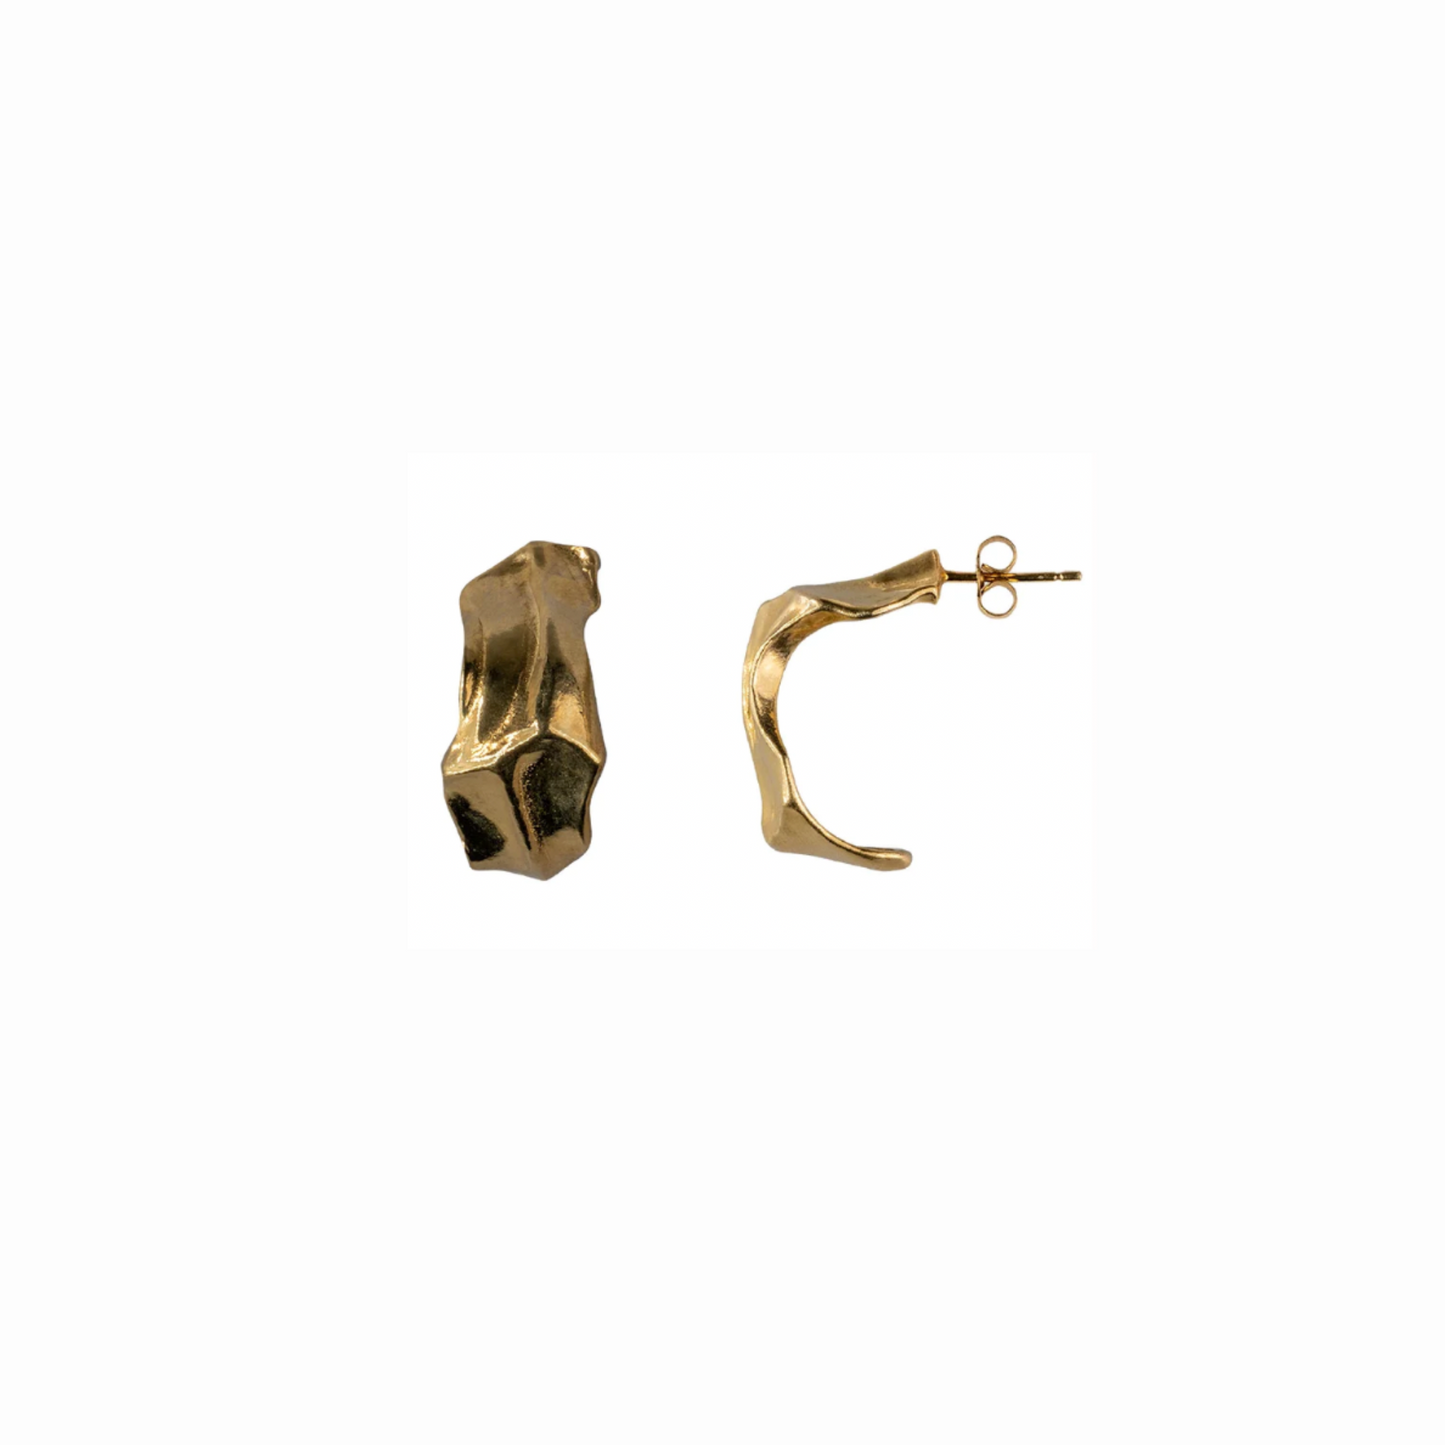 DUXFORD STUDIOS - Mea 18 Carat Gold Vermeil Sculptural Hoop Earrings